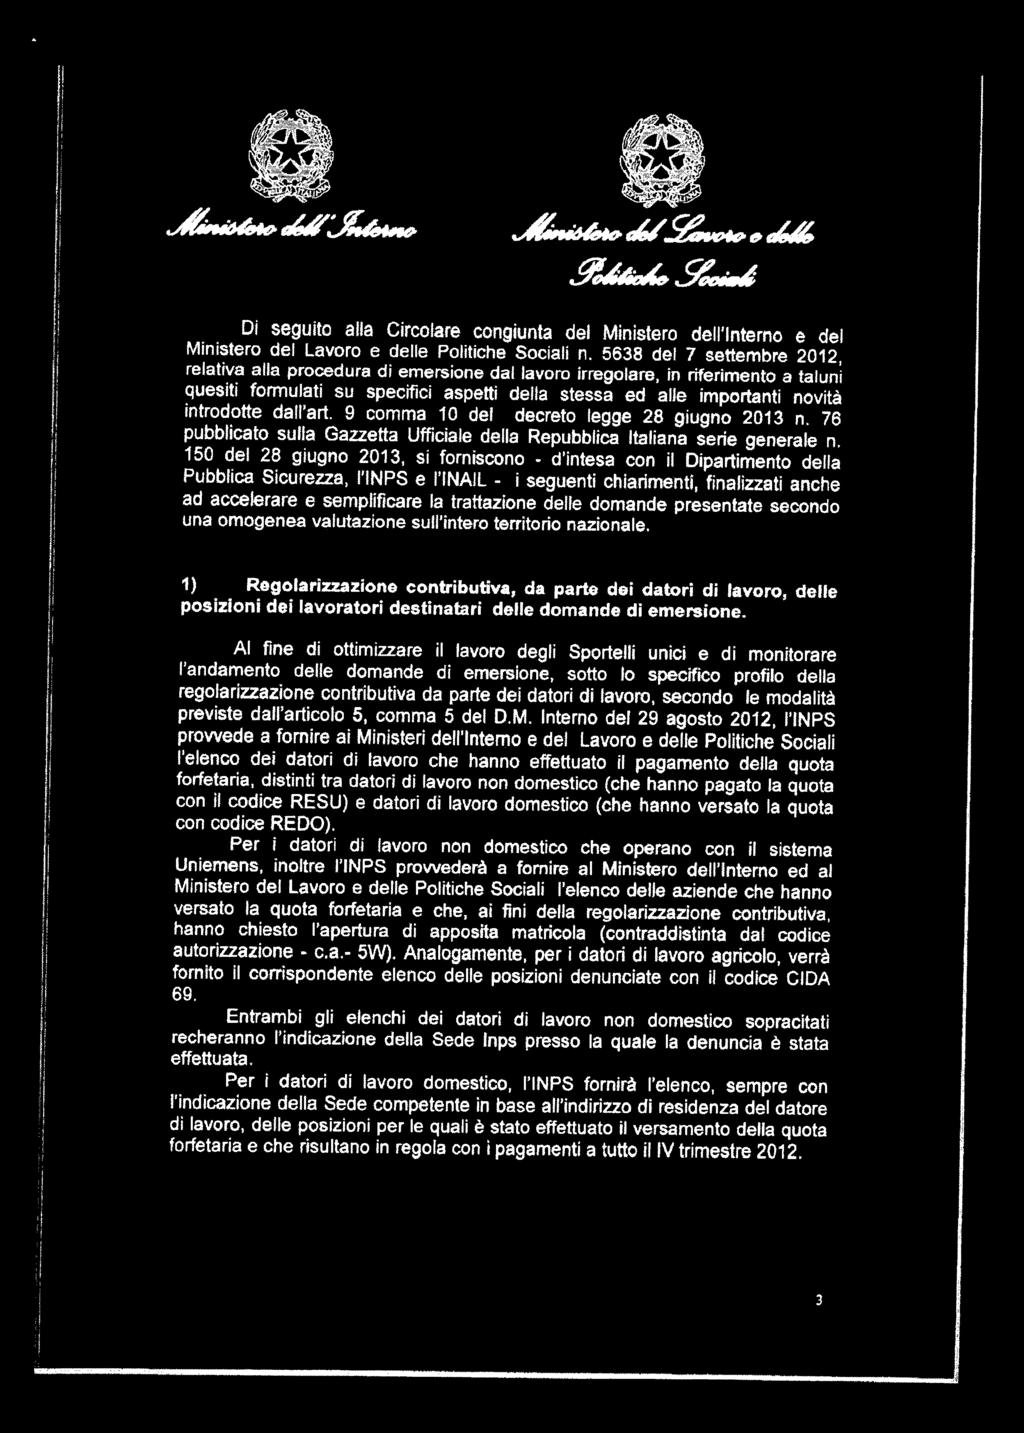 9 comma 10 de decreto egge 28 giugno 2013 n. 76 pubbicato sua Gazzetta Ufficiae dea Repubbica Itaiana serie generae n.